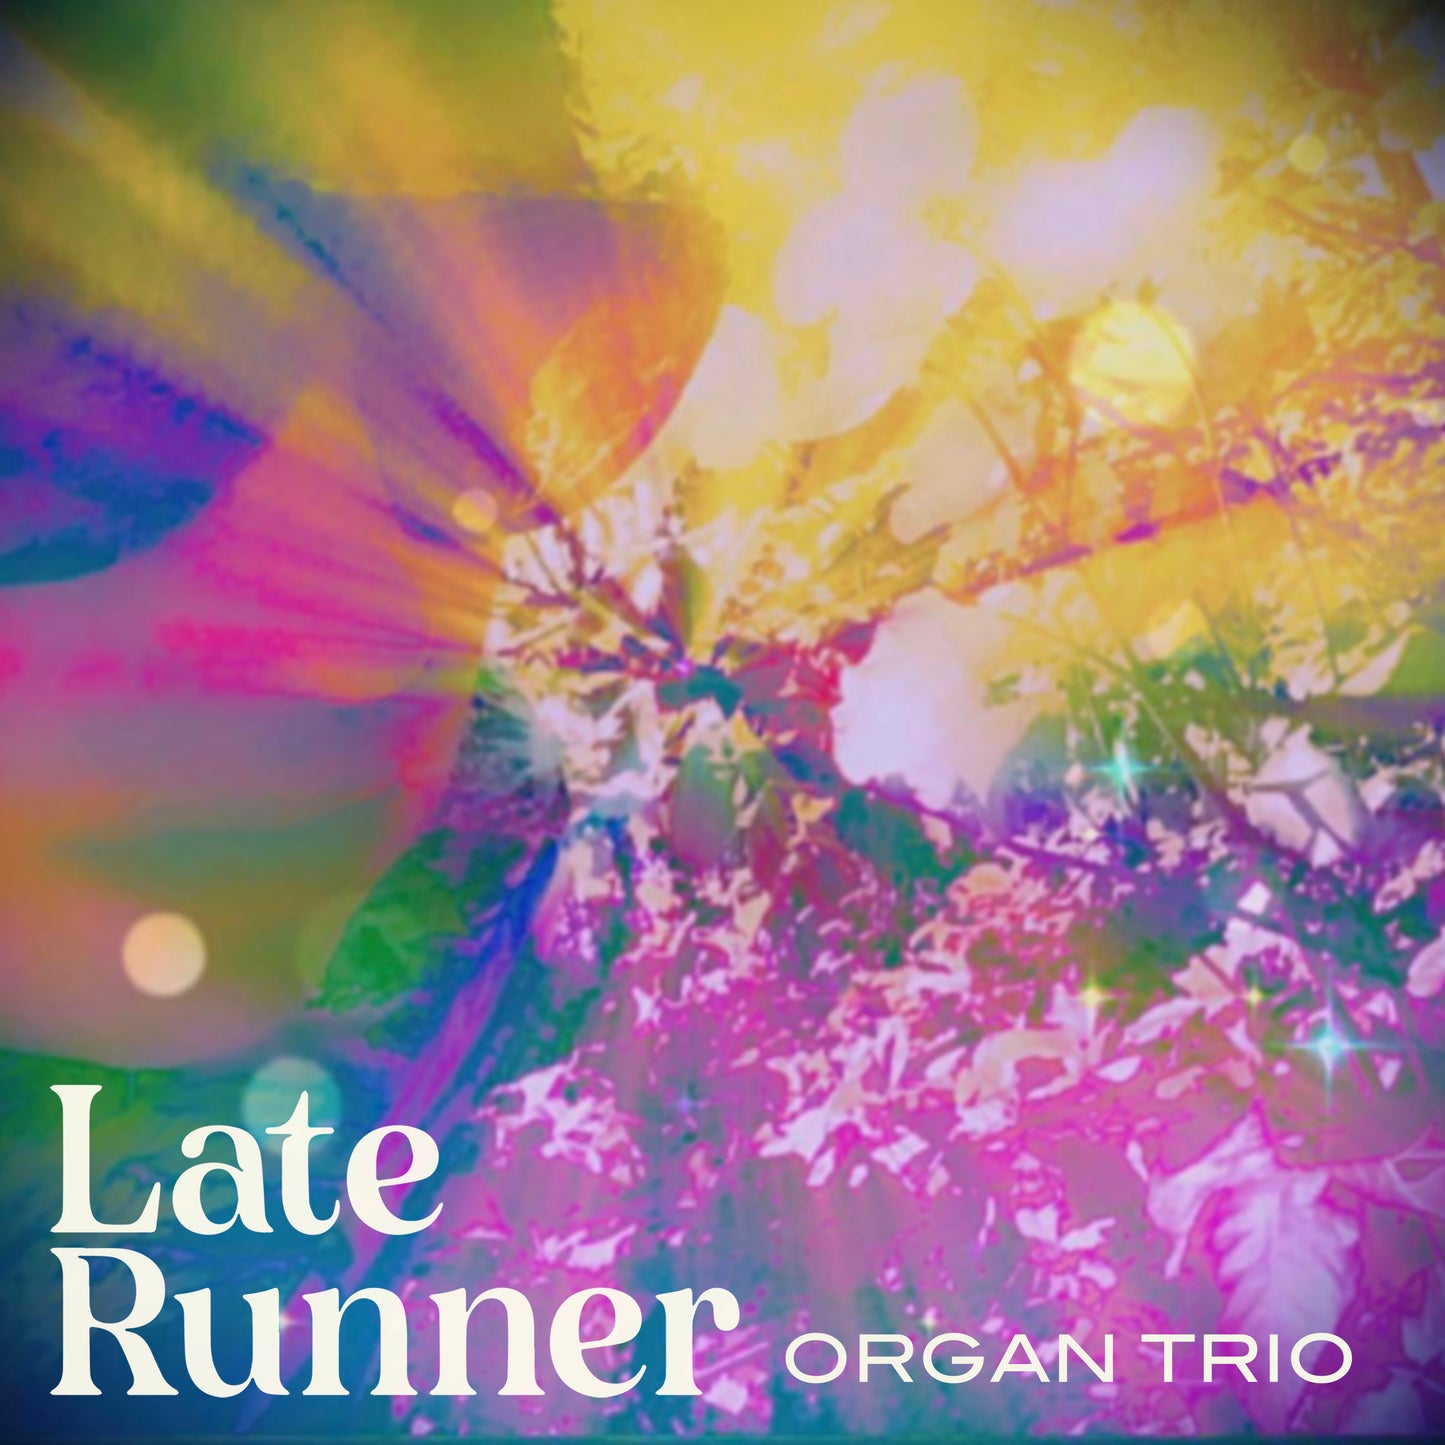 Organ Trio